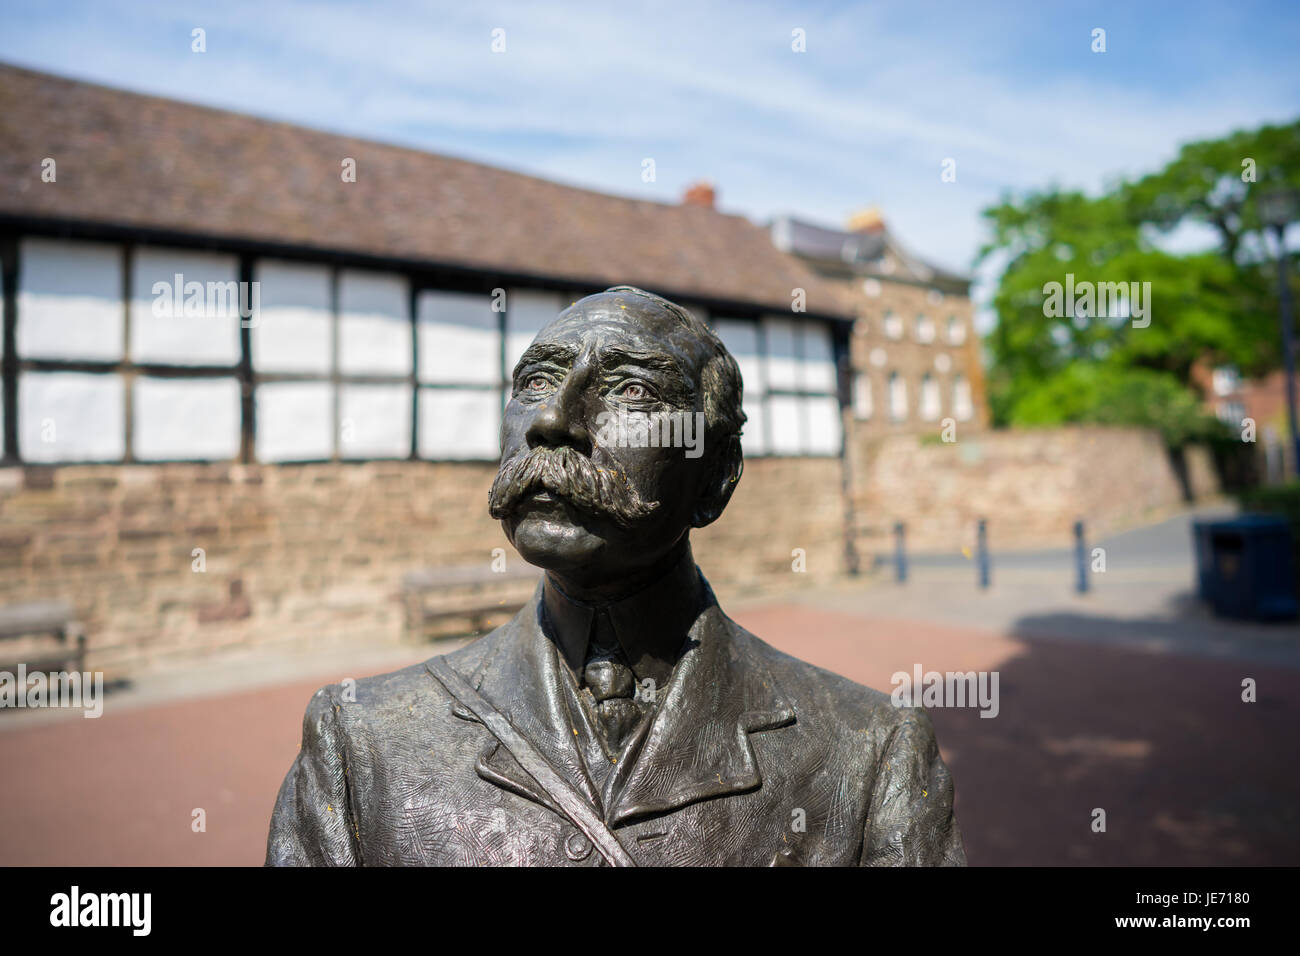 Elgar bronze statue Hereford Herefordshire England UK Stock Photo